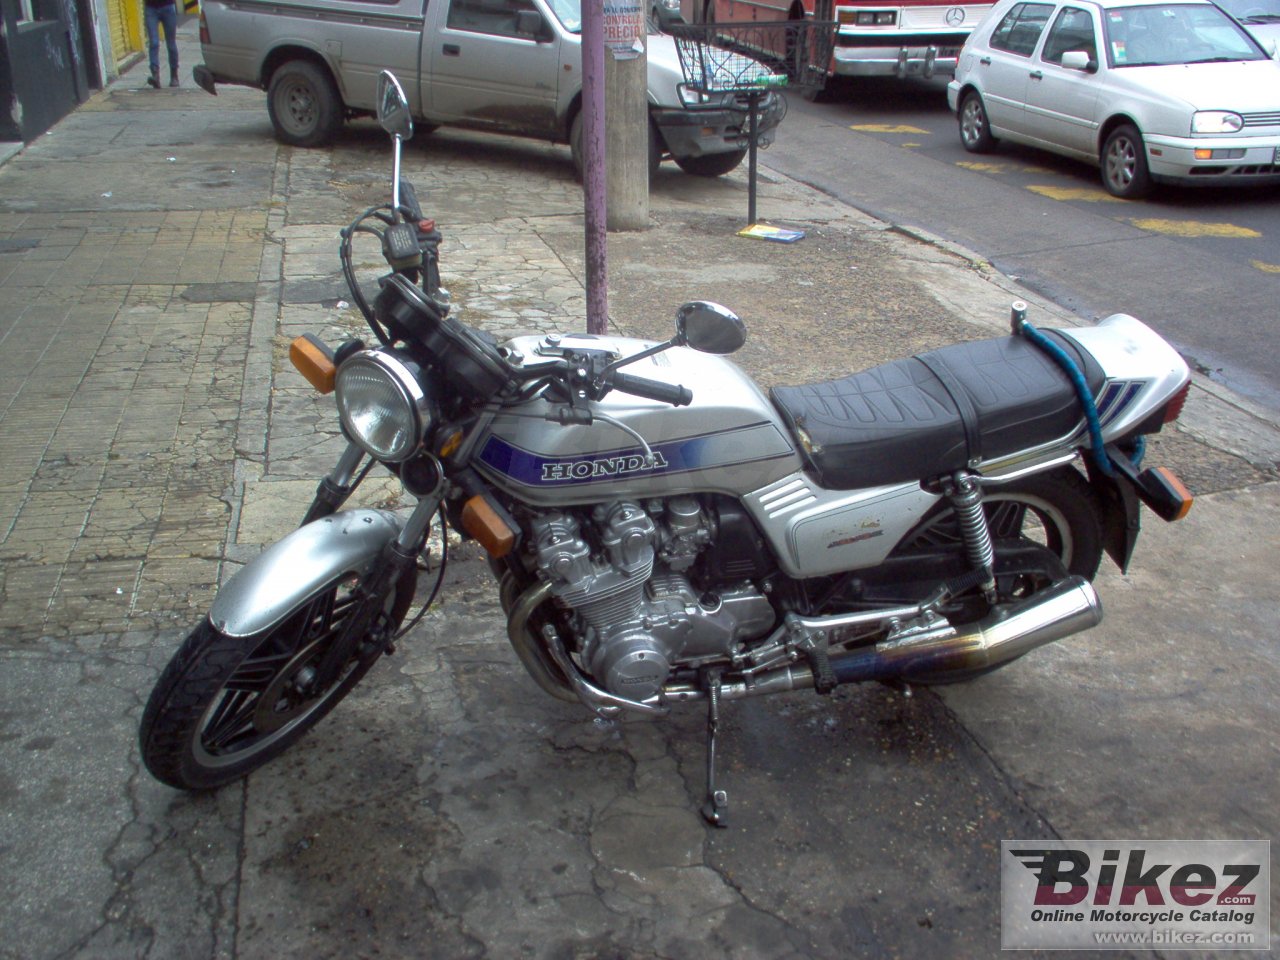 Honda CB 900 F Bol d`Or